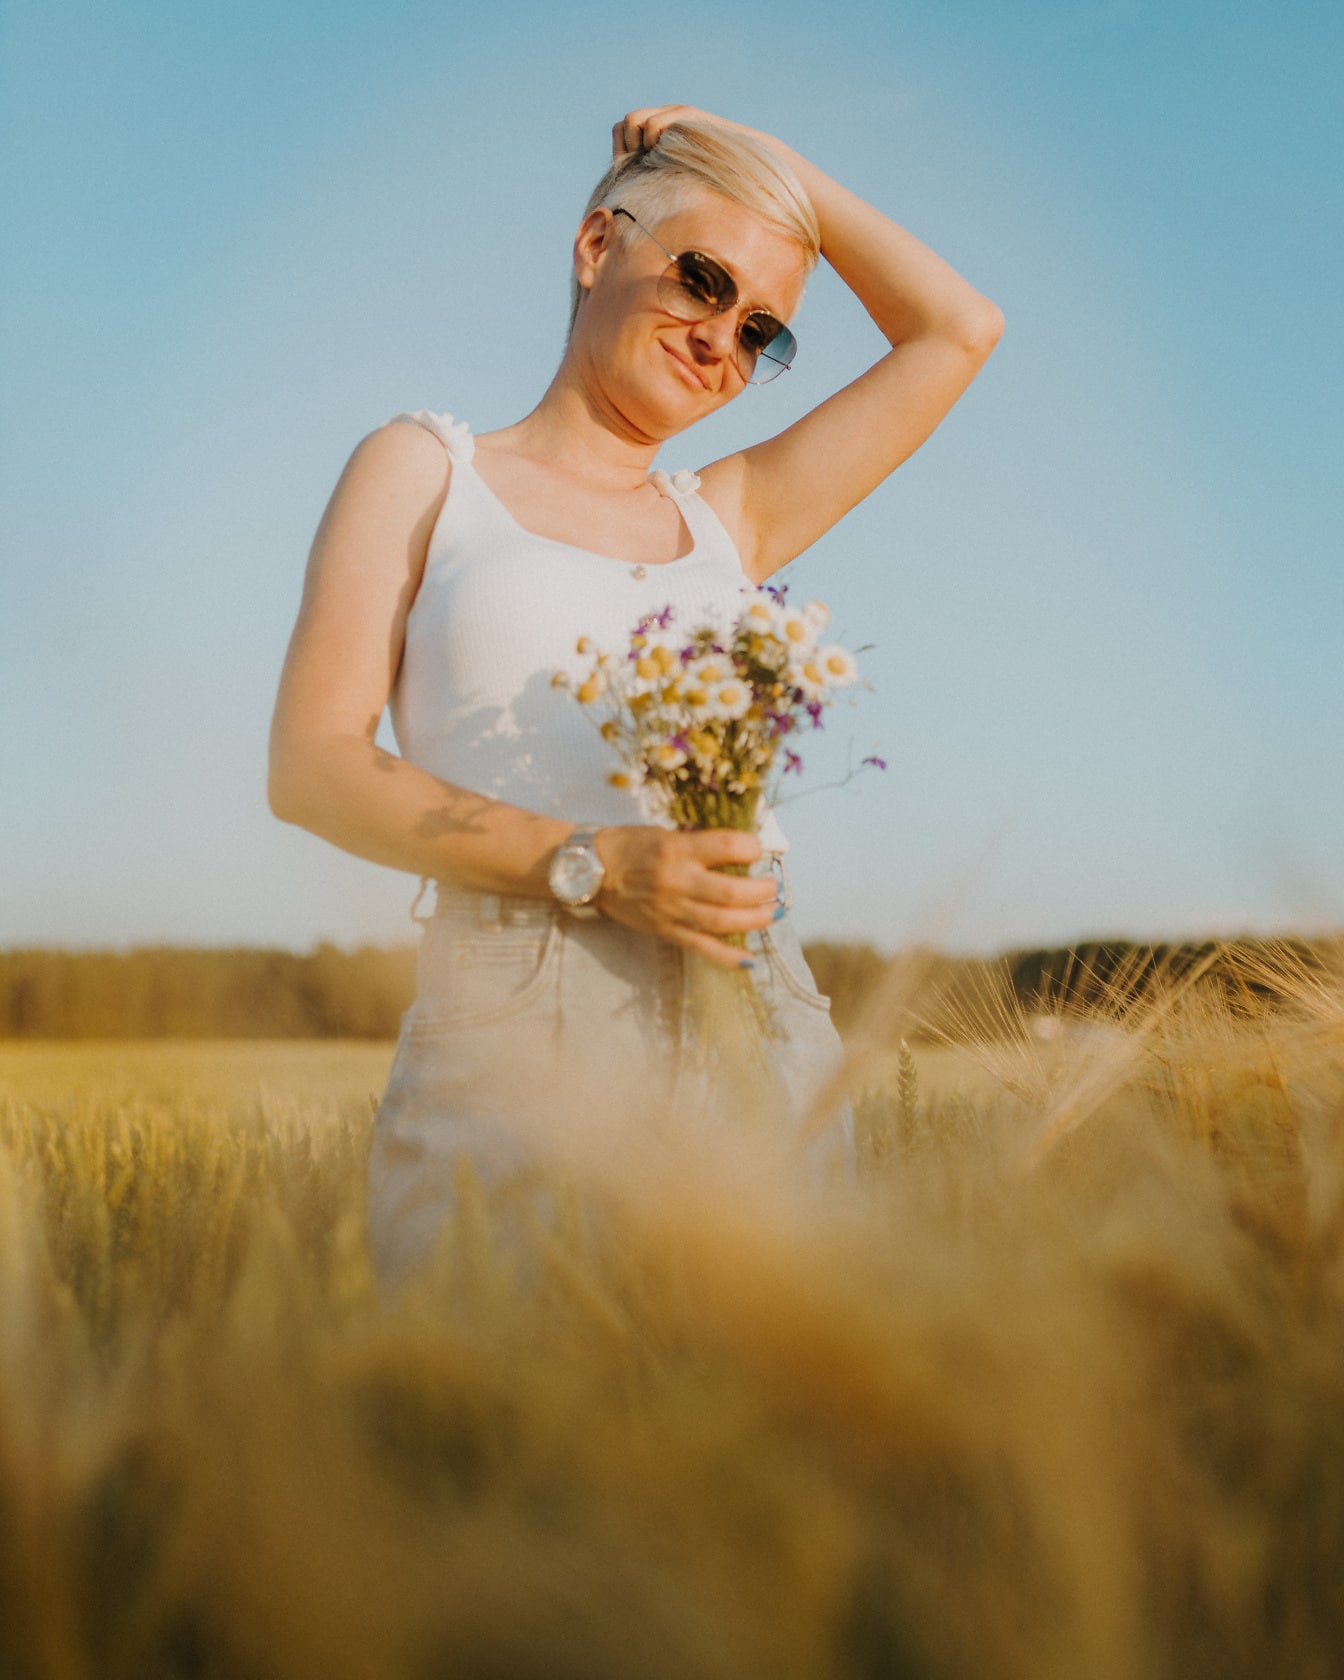 Великолепная женщина в белой рубашке с цветами позирует на пшеничном поле